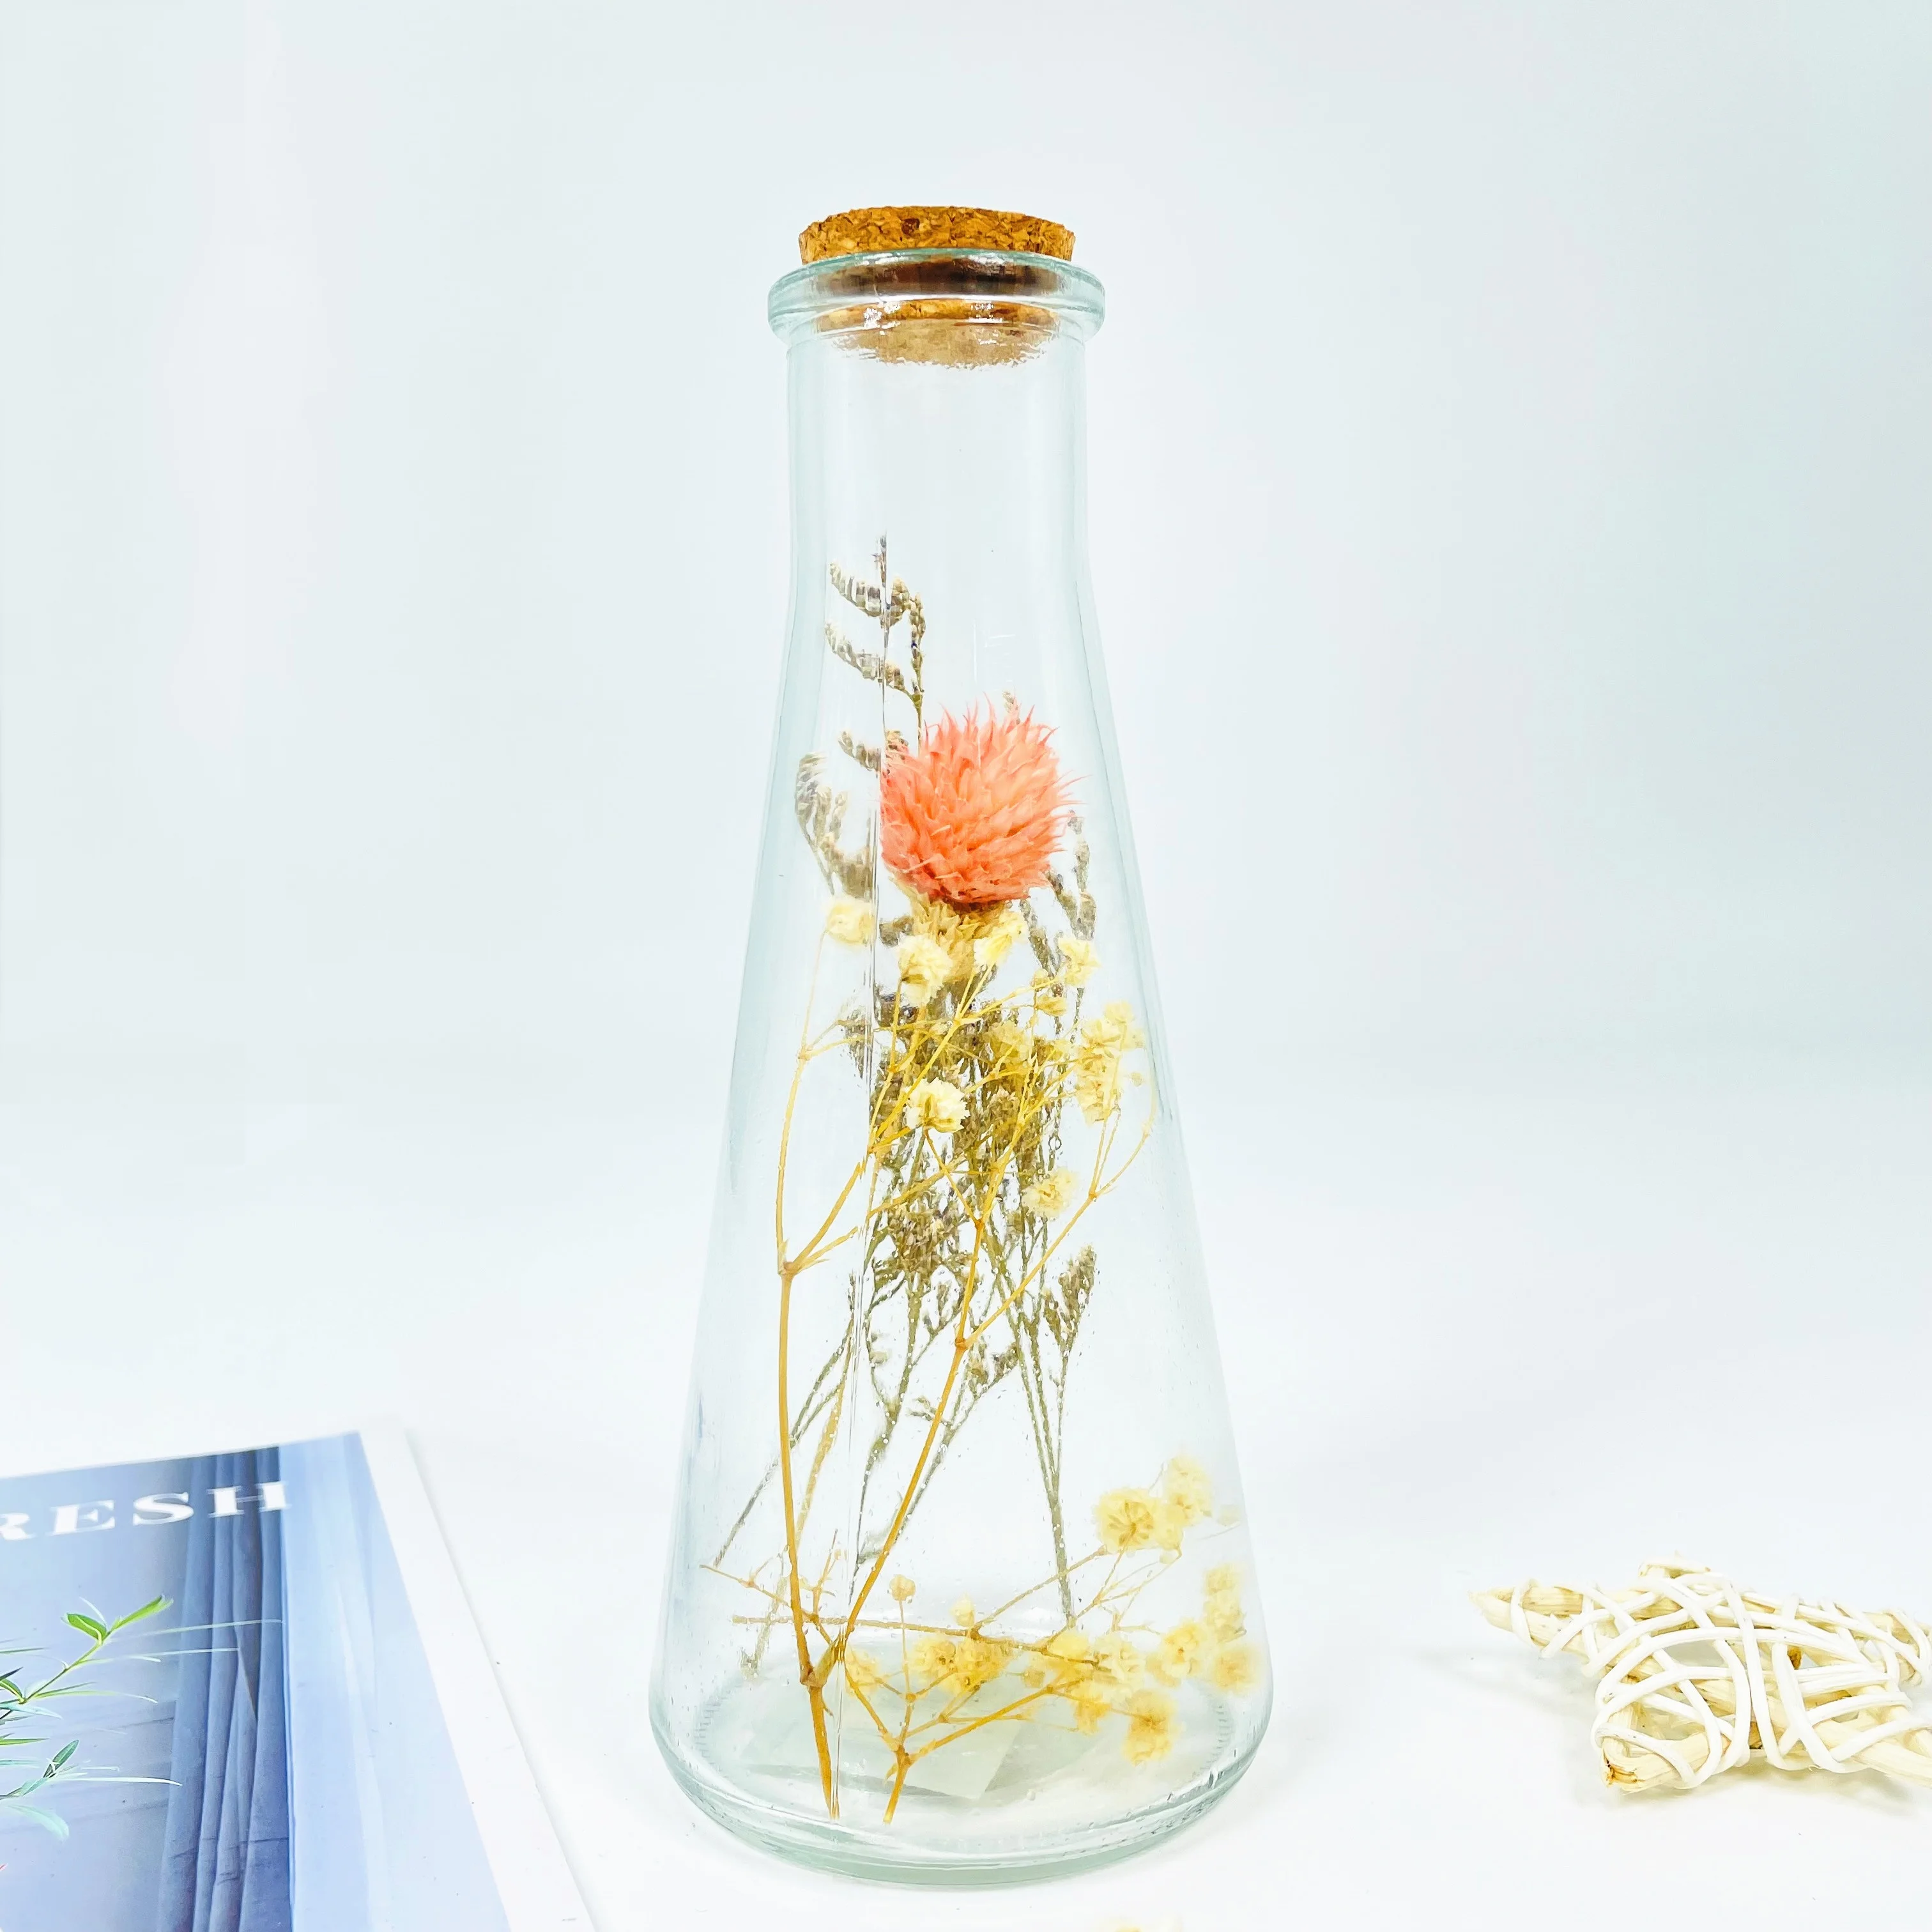 hotsale Transparent Decoration Vase Bottle Unique Glass home decoration with dried flower for tabletop decoration